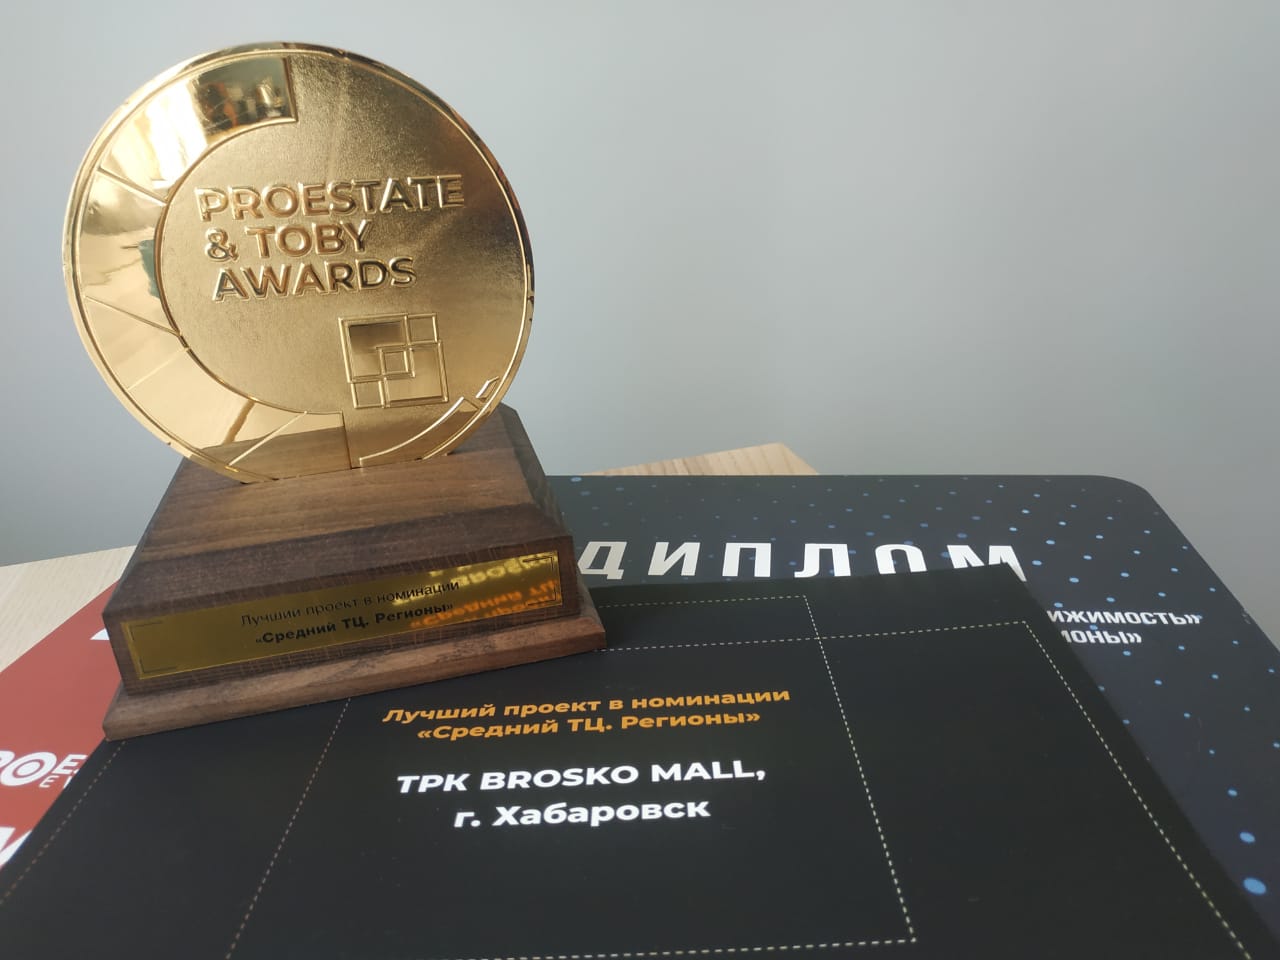 ТРК BROSKO MALL стал победителем премии PROESTATE & TOBY AWARDS 2019